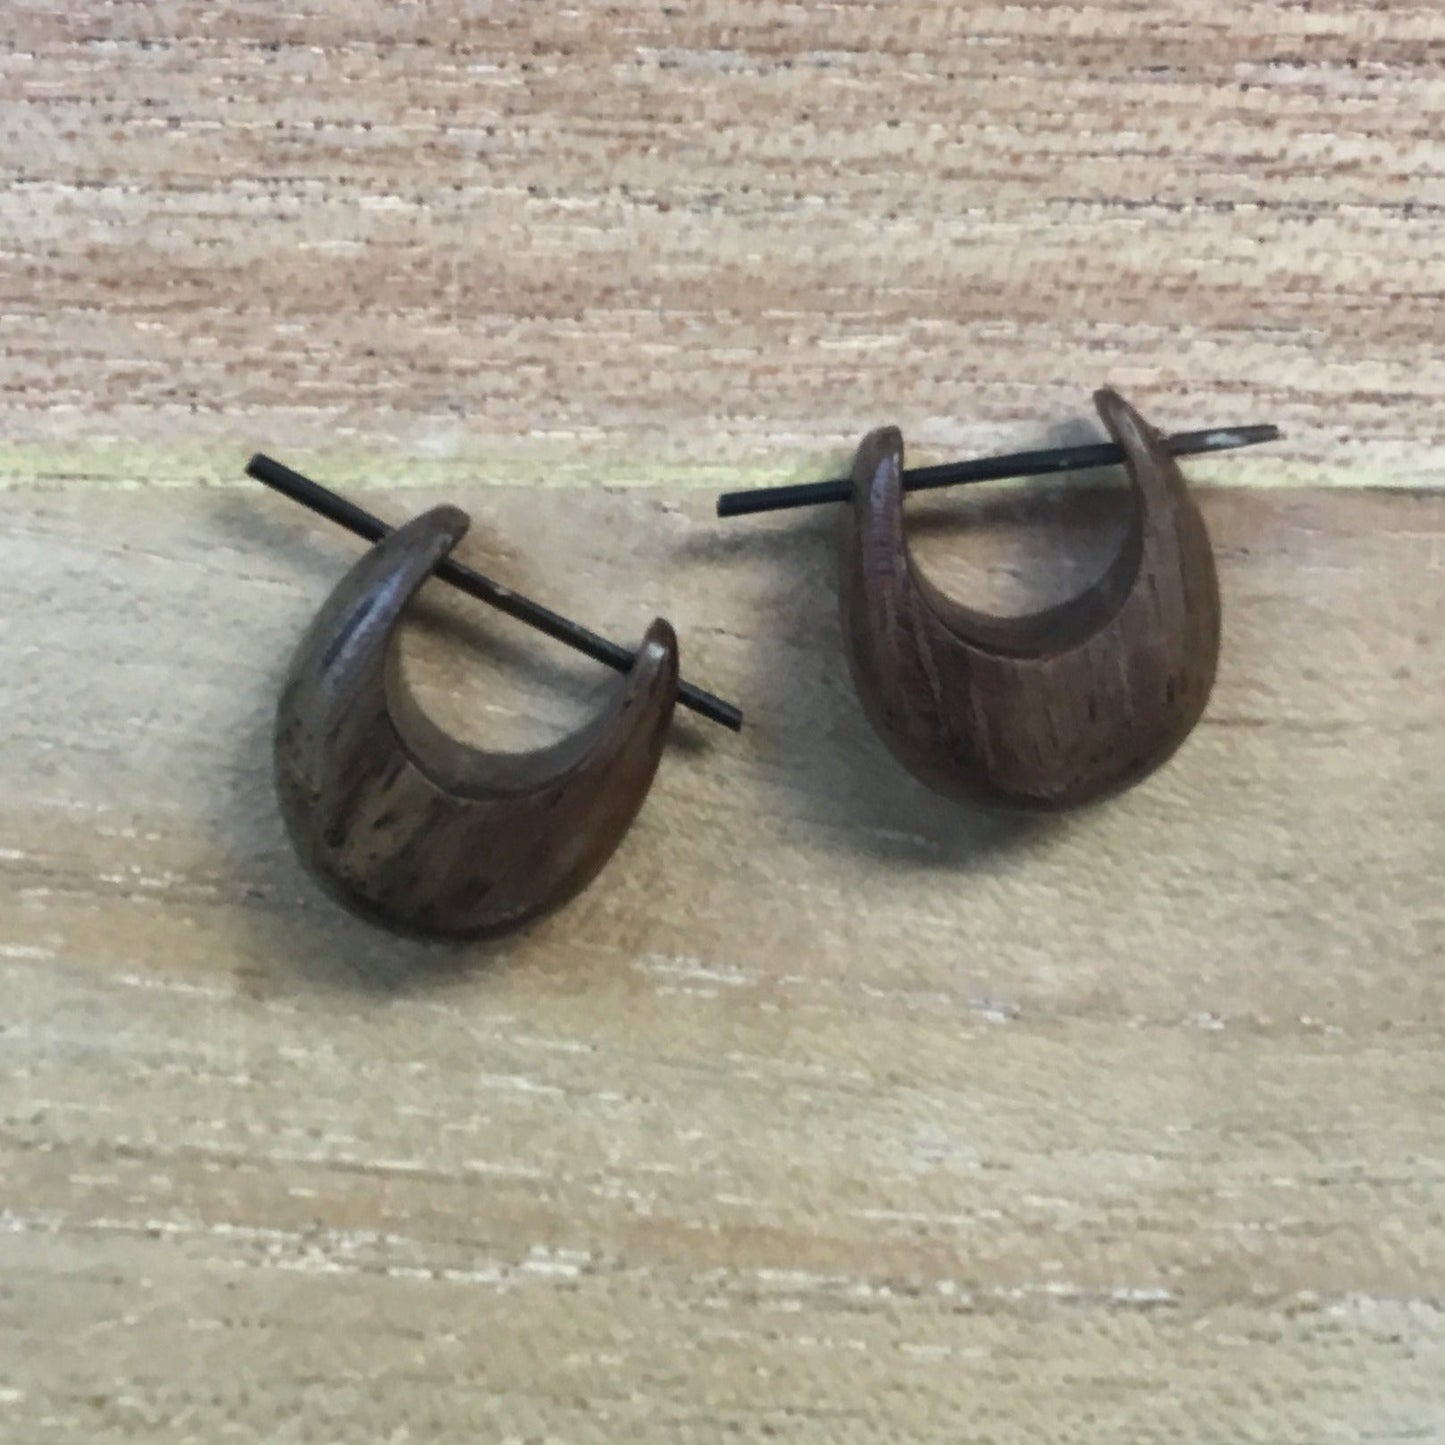 wooden earrings.